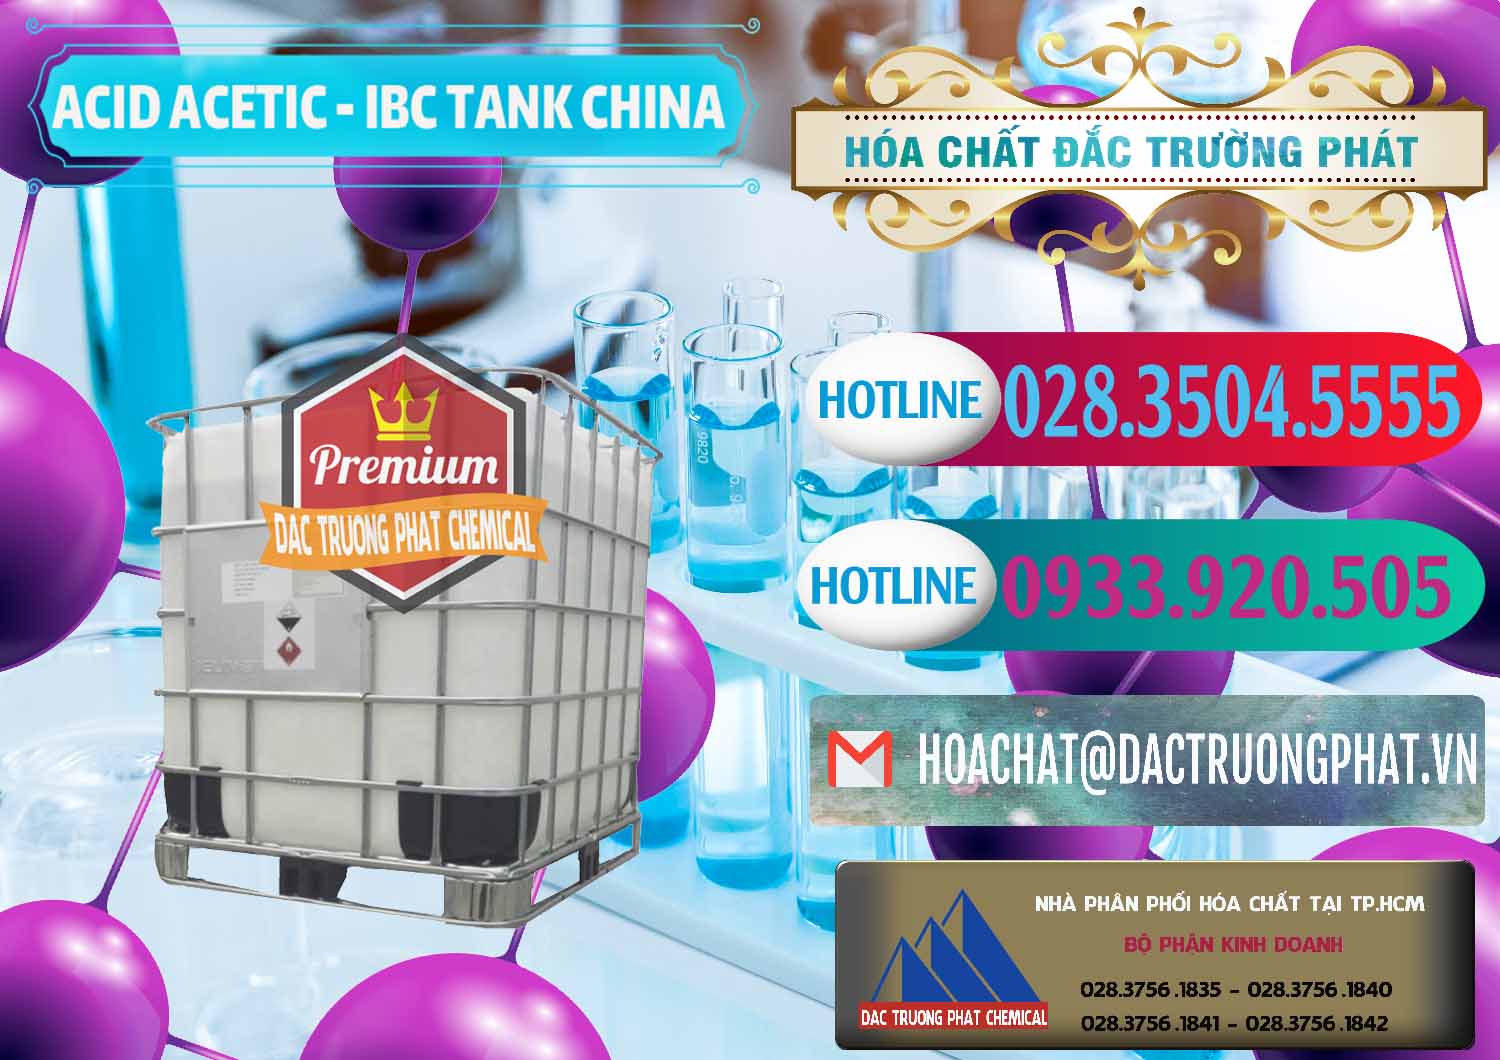 Cty chuyên bán - cung ứng Acetic Acid – Axit Acetic Tank Bồn IBC Trung Quốc China - 0443 - Phân phối ( nhập khẩu ) hóa chất tại TP.HCM - truongphat.vn